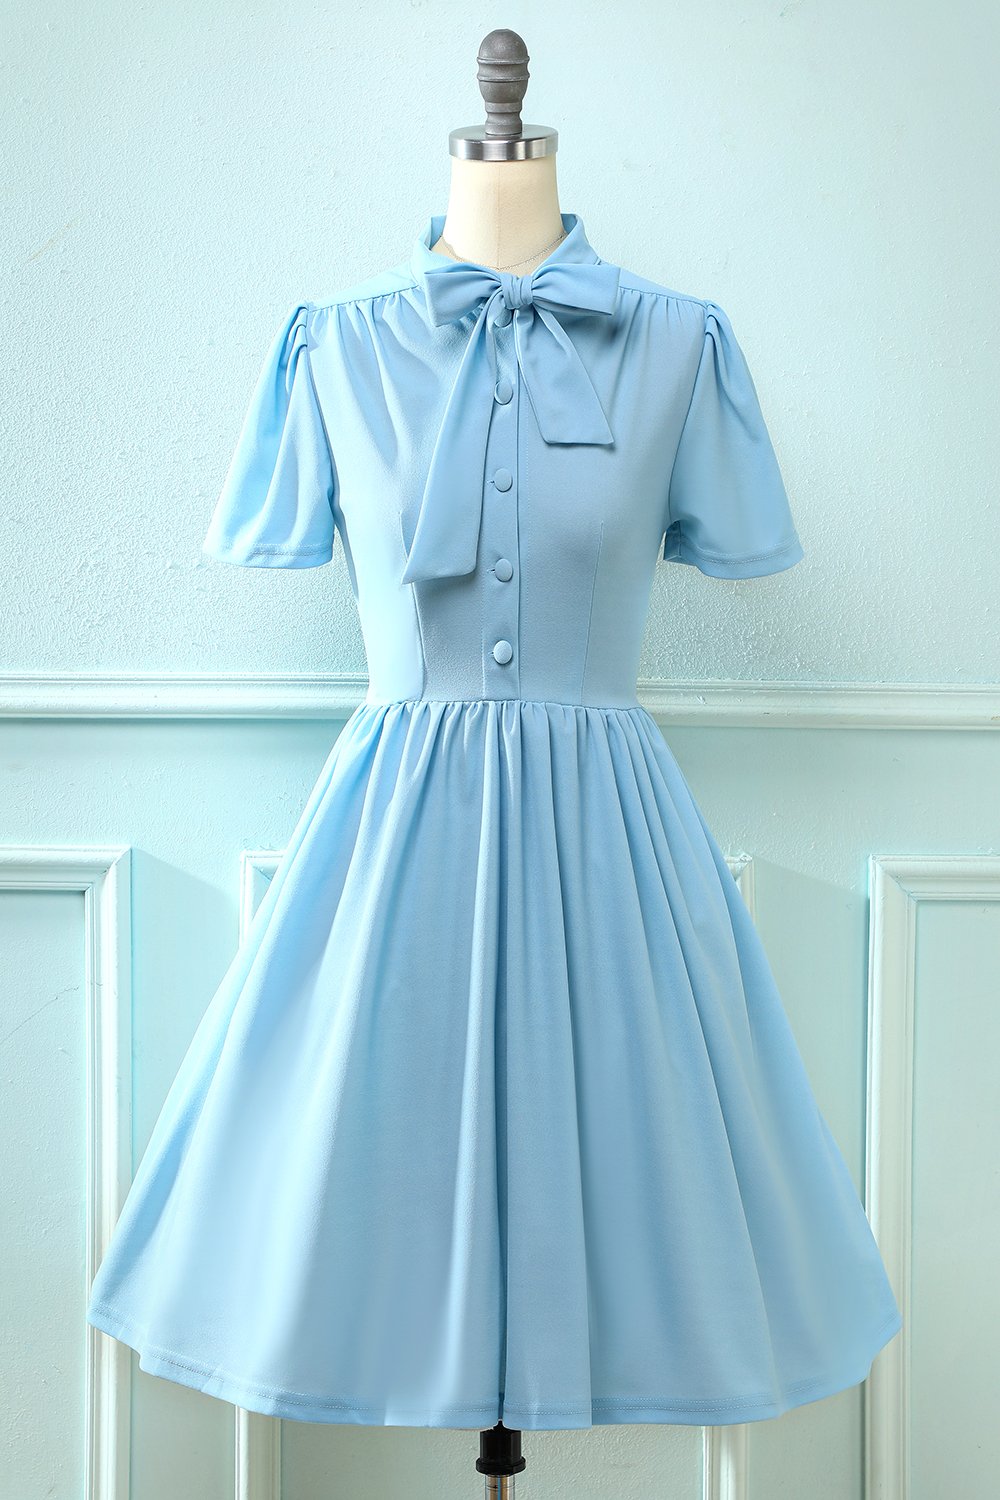 Vestido azul vintage de la década de 1950 con Bowknot